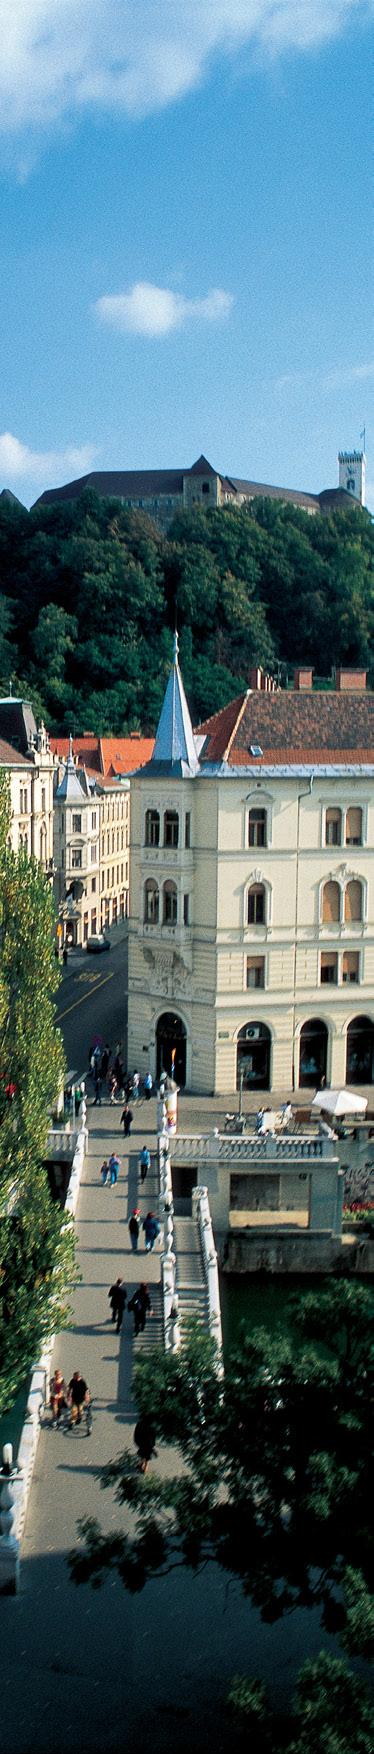 12 Priročnik za hotele za razvoj trajnostnih poslovnih modelov SLOVENIA GREEN SLOVENIA GREEN Priročnik za hotele za razvoj